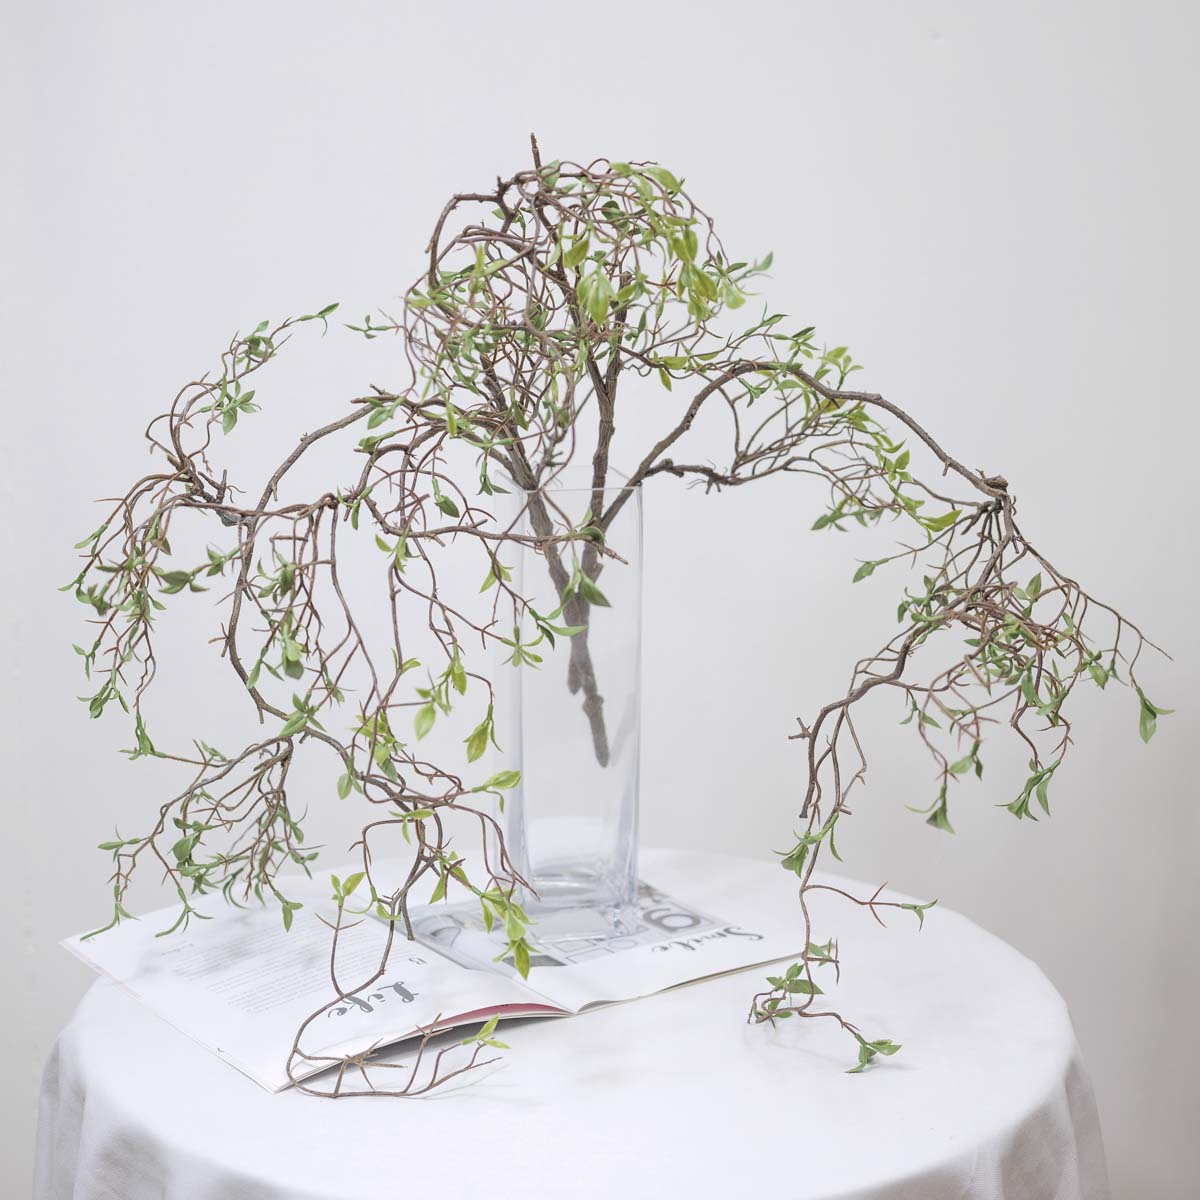 조화식물 버드나무 새순잎 바인 2개를 화병에 꽂아놓은 사진